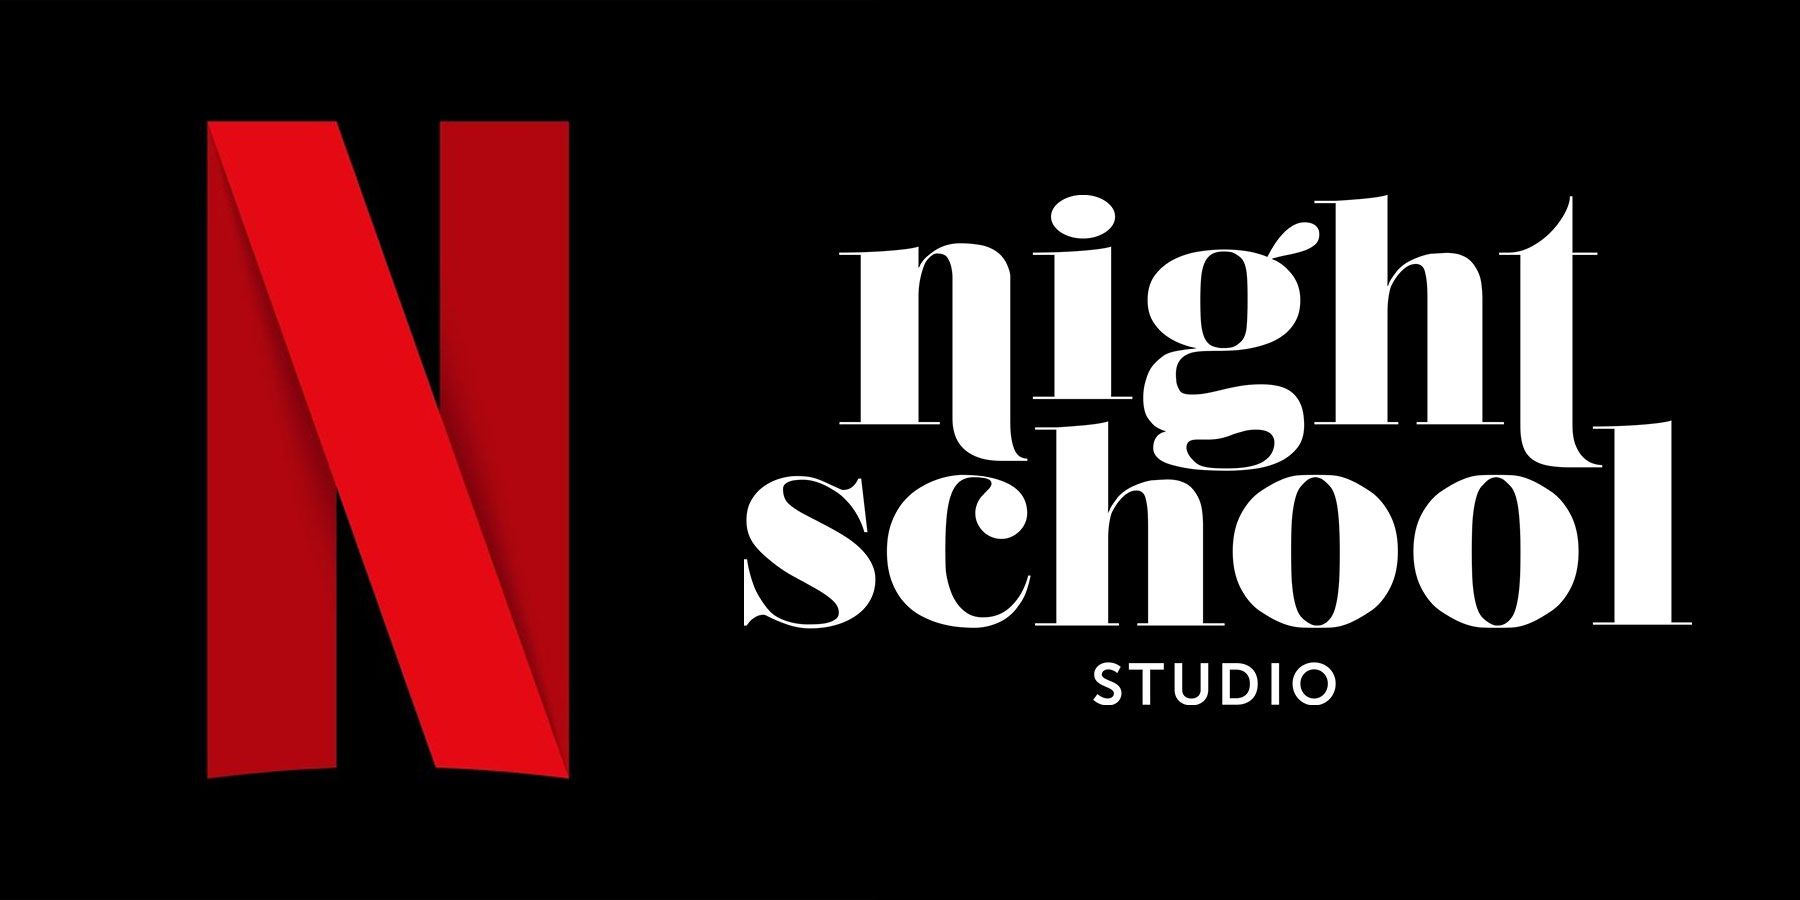 Netflix Acquiring Night School Studio არის კარგი ნიშანი მისი სტრიმინგის ამბიციებისთვის